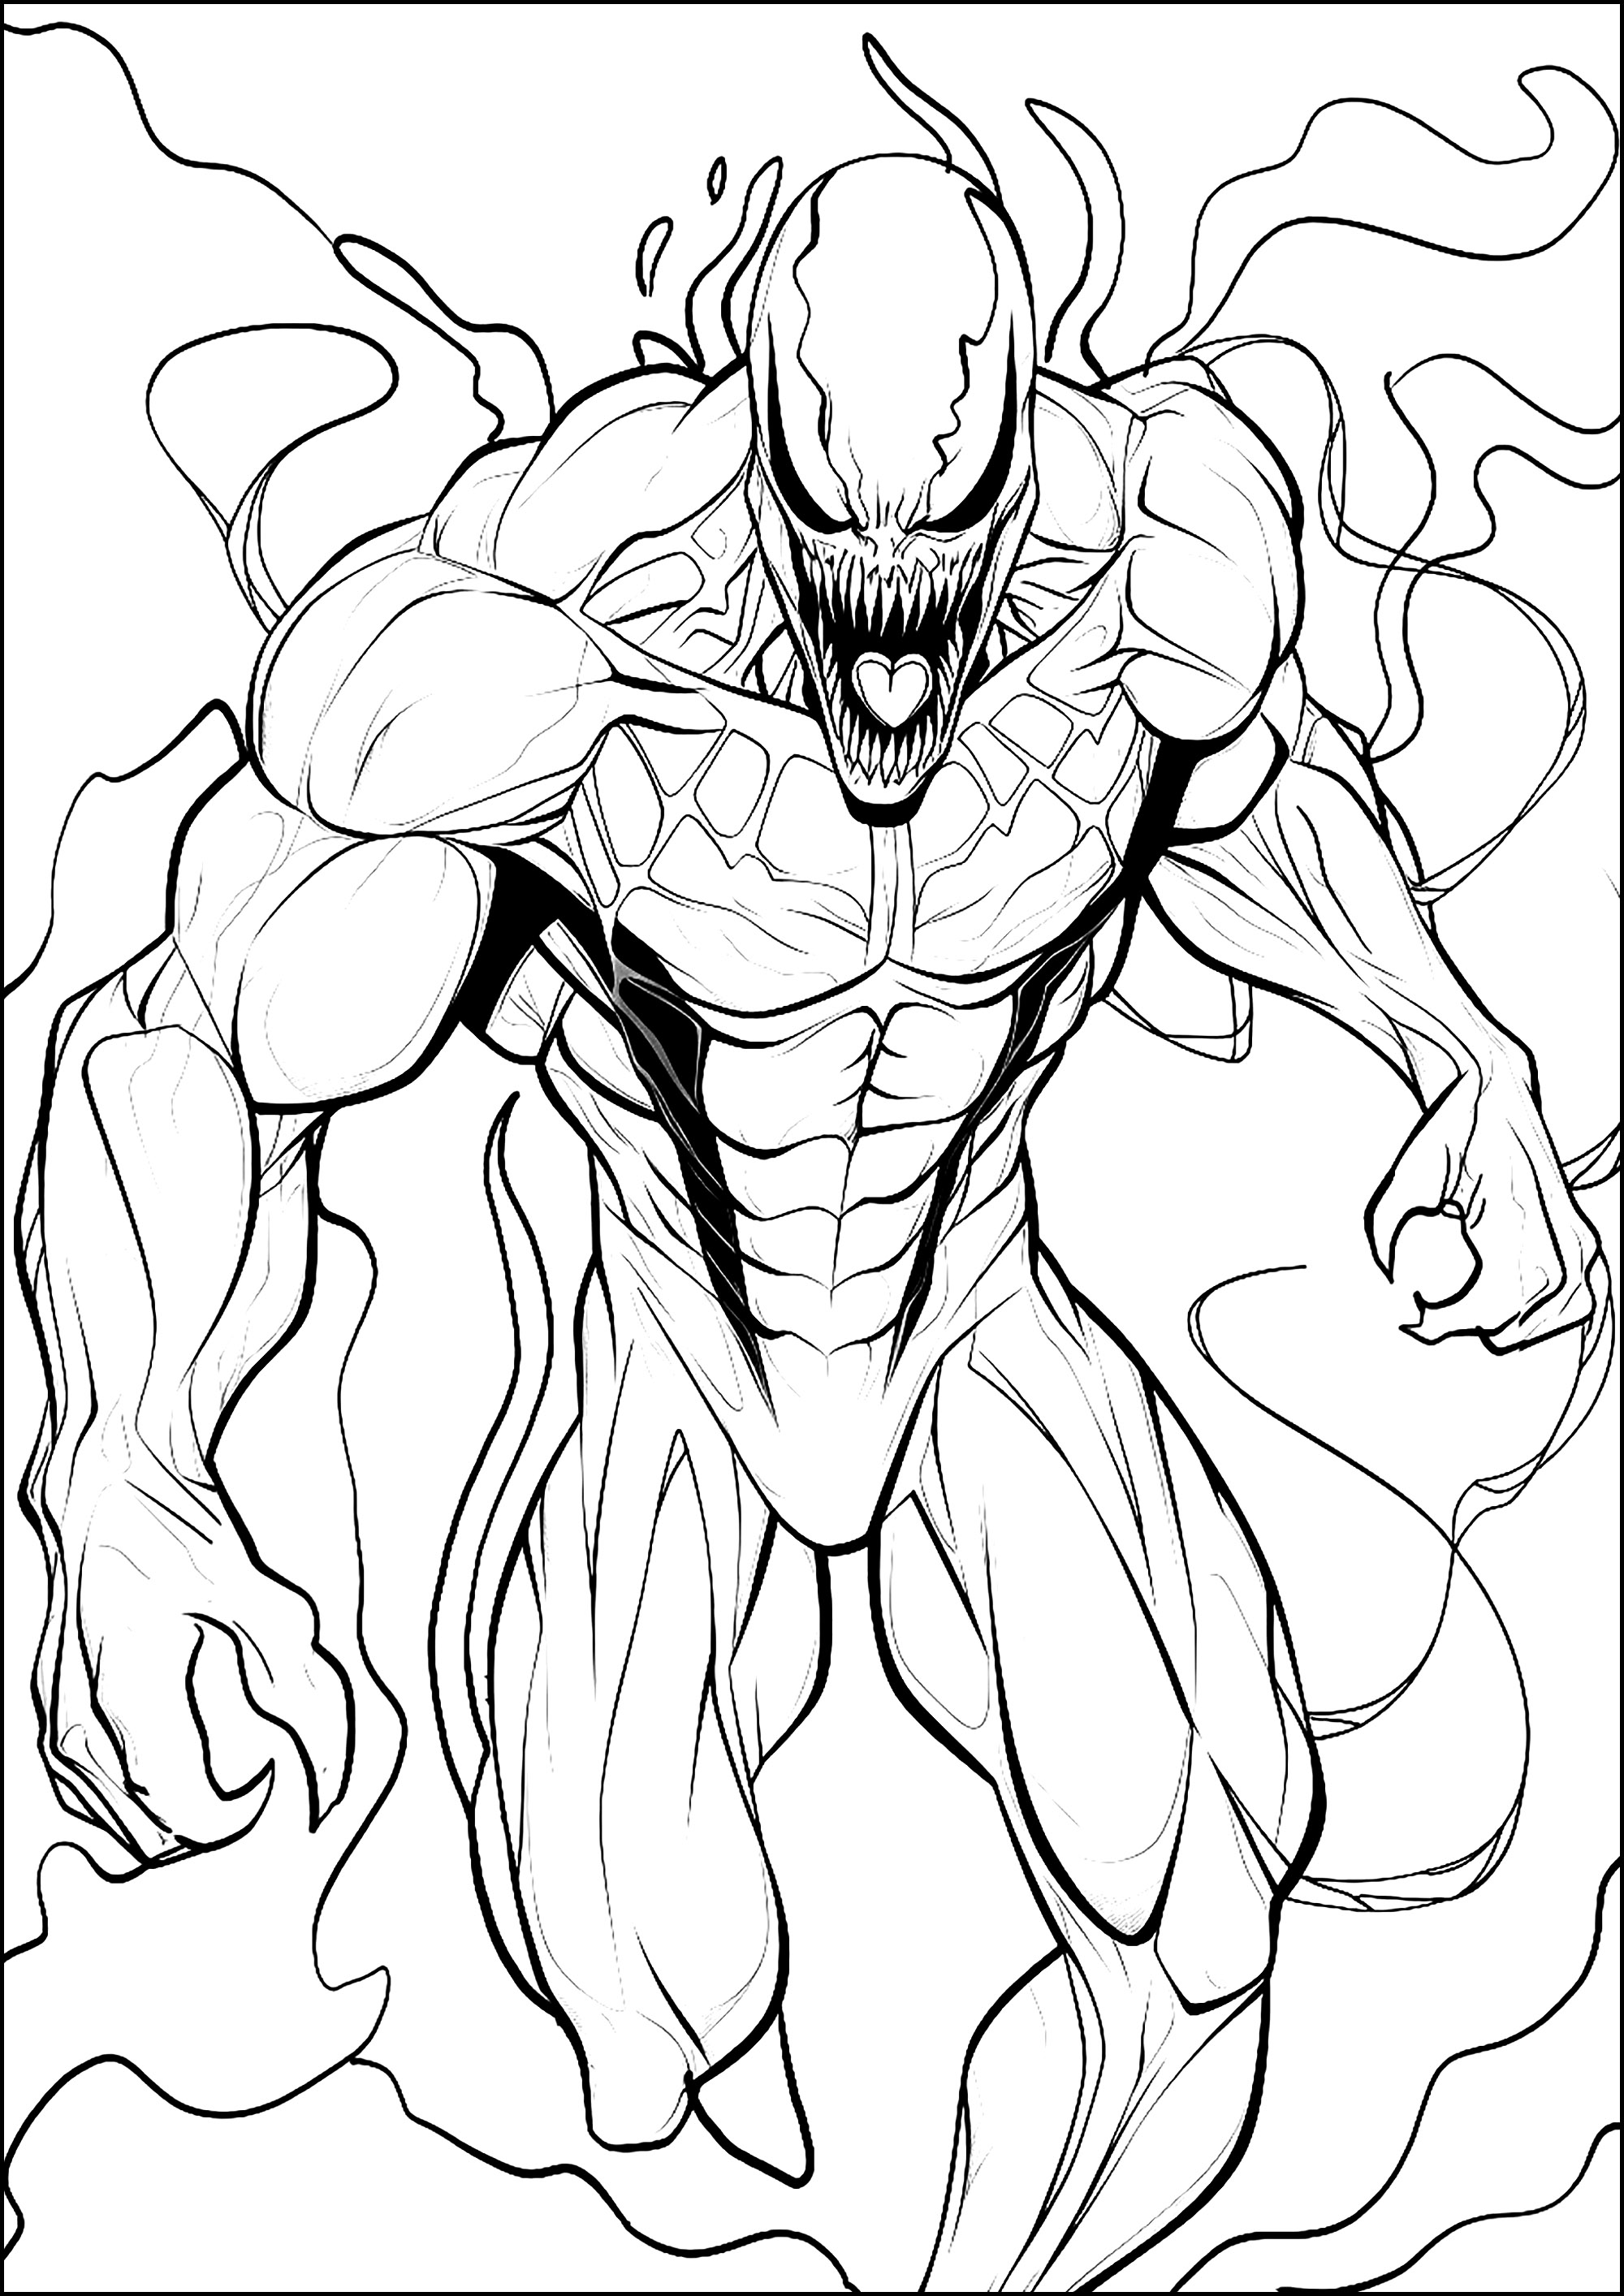 O assustador Venom